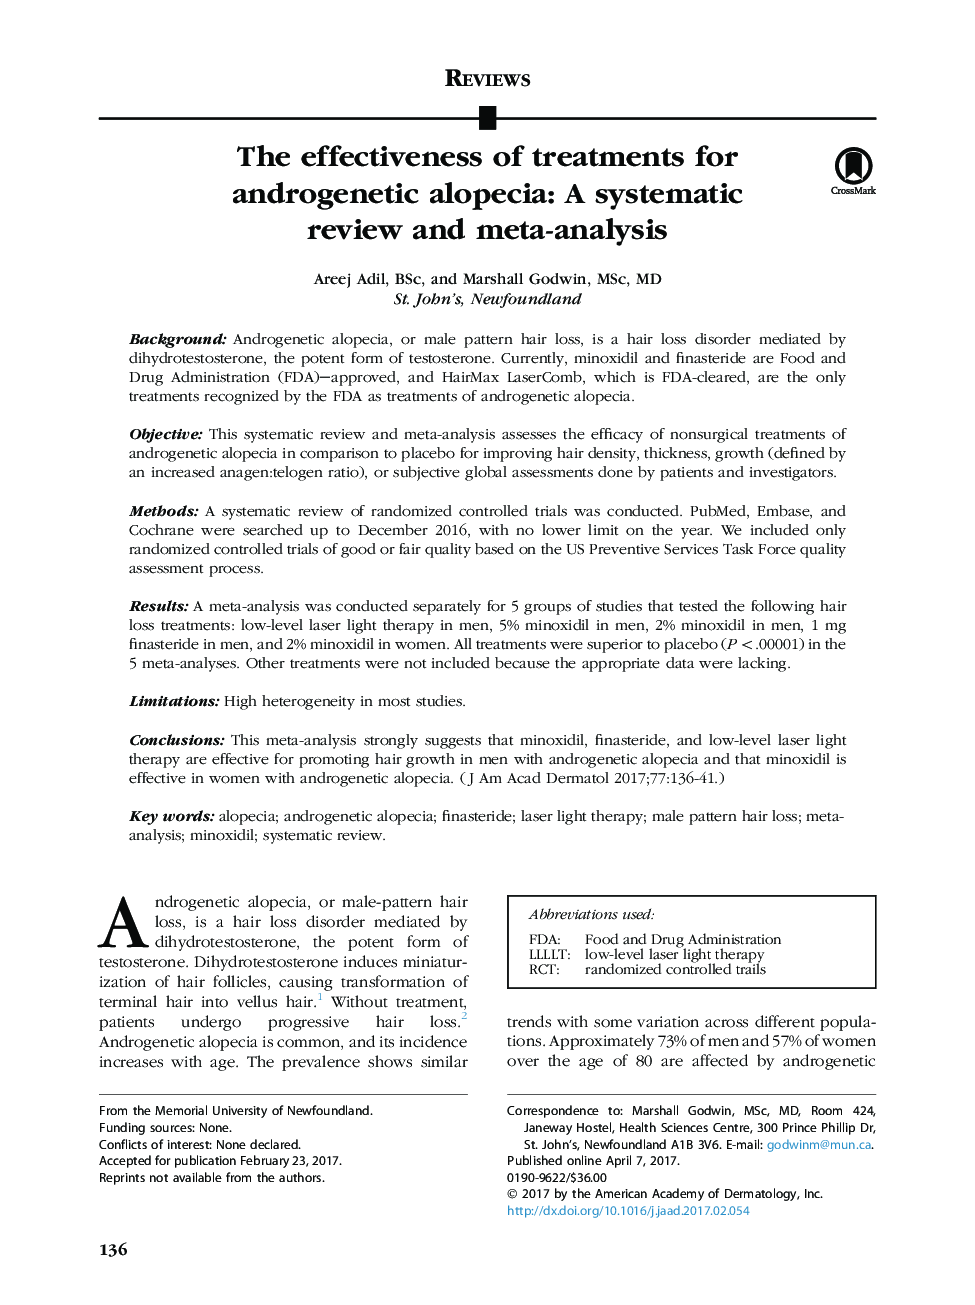 اثربخشی درمان برای آلوپسی آندروژنیک: بررسی منظم و متاآنالیز 